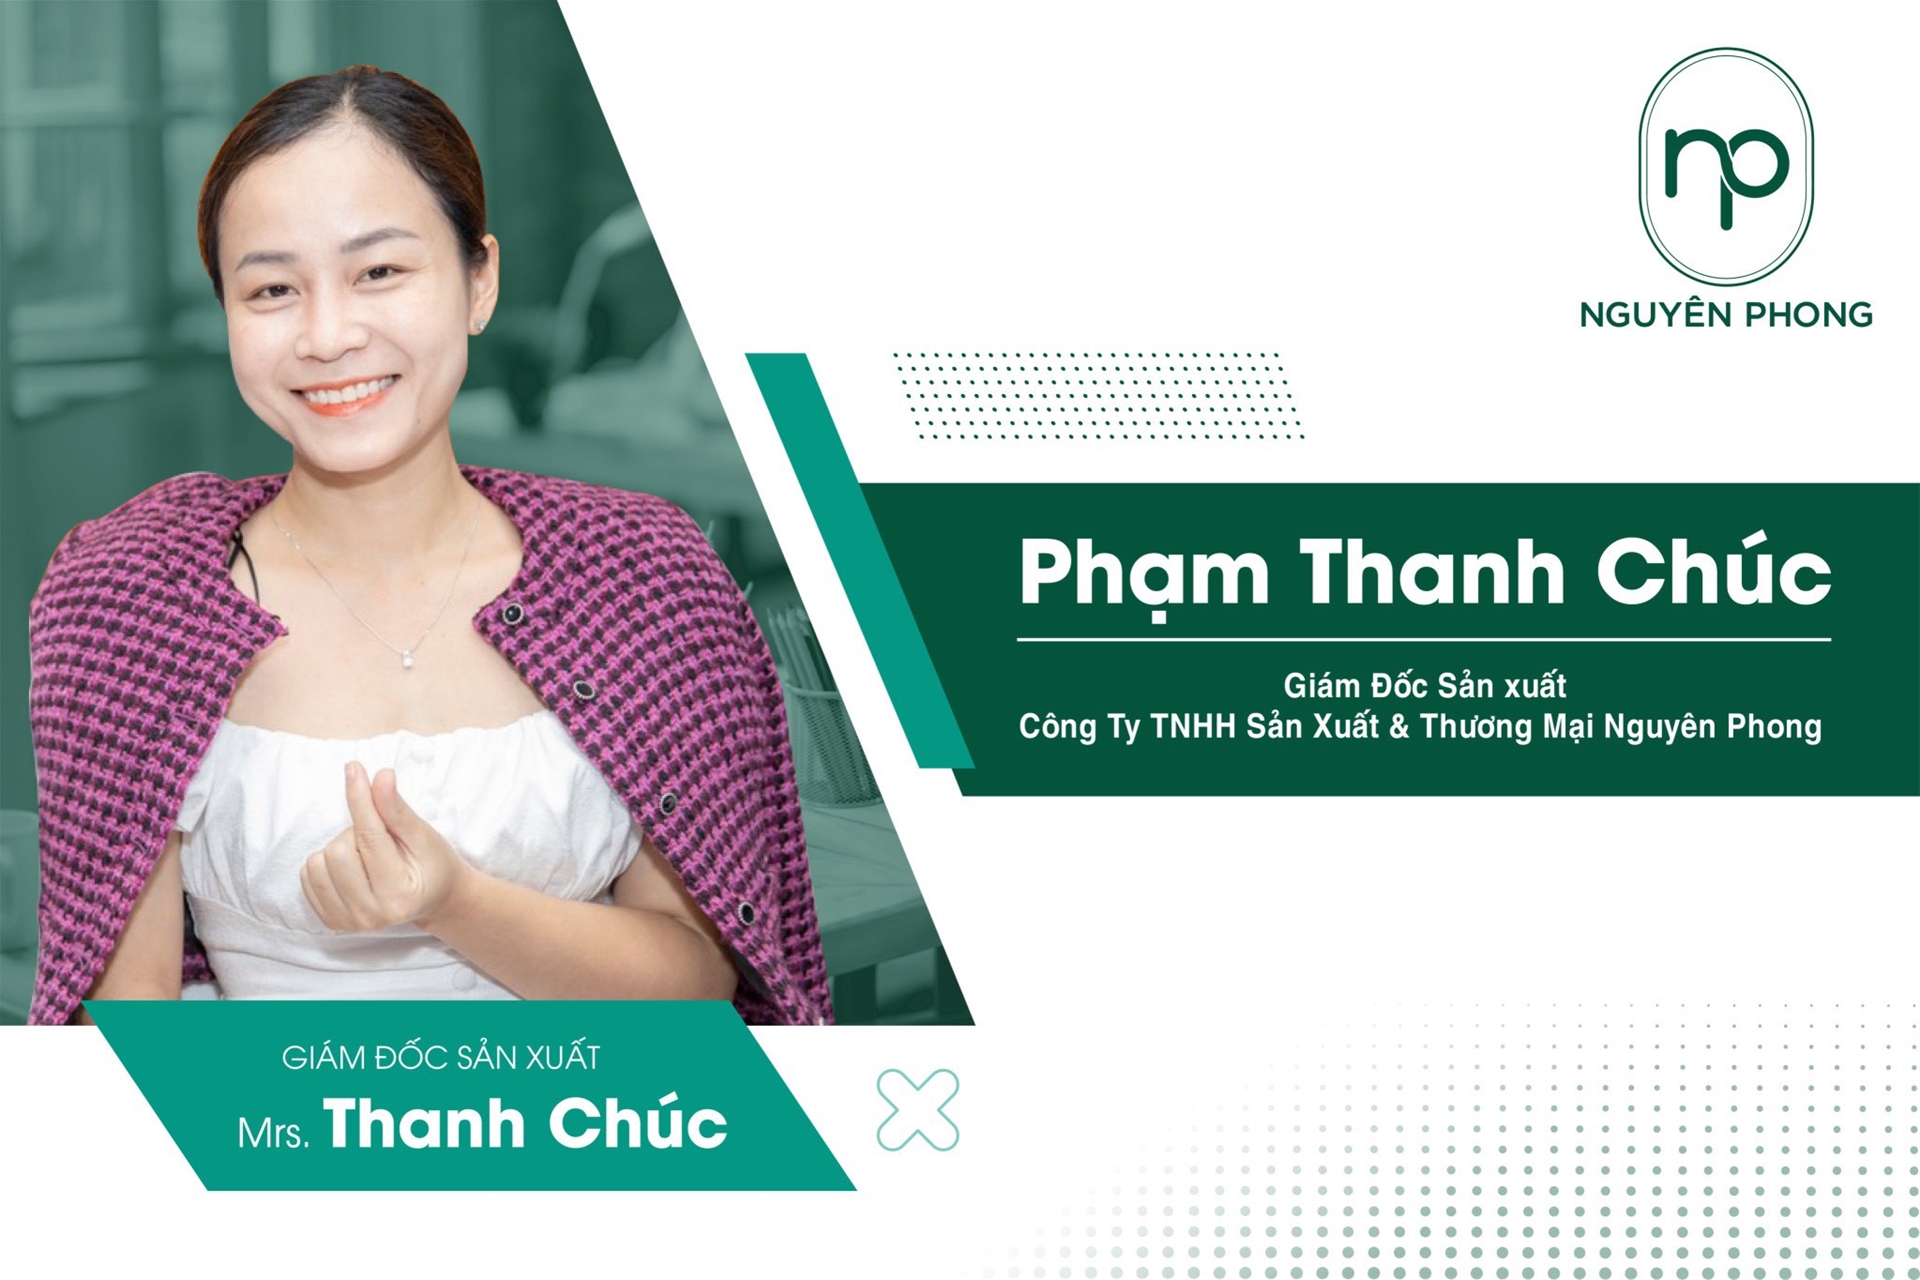 Phạm Thanh Chúc - Người sáng lập công ty